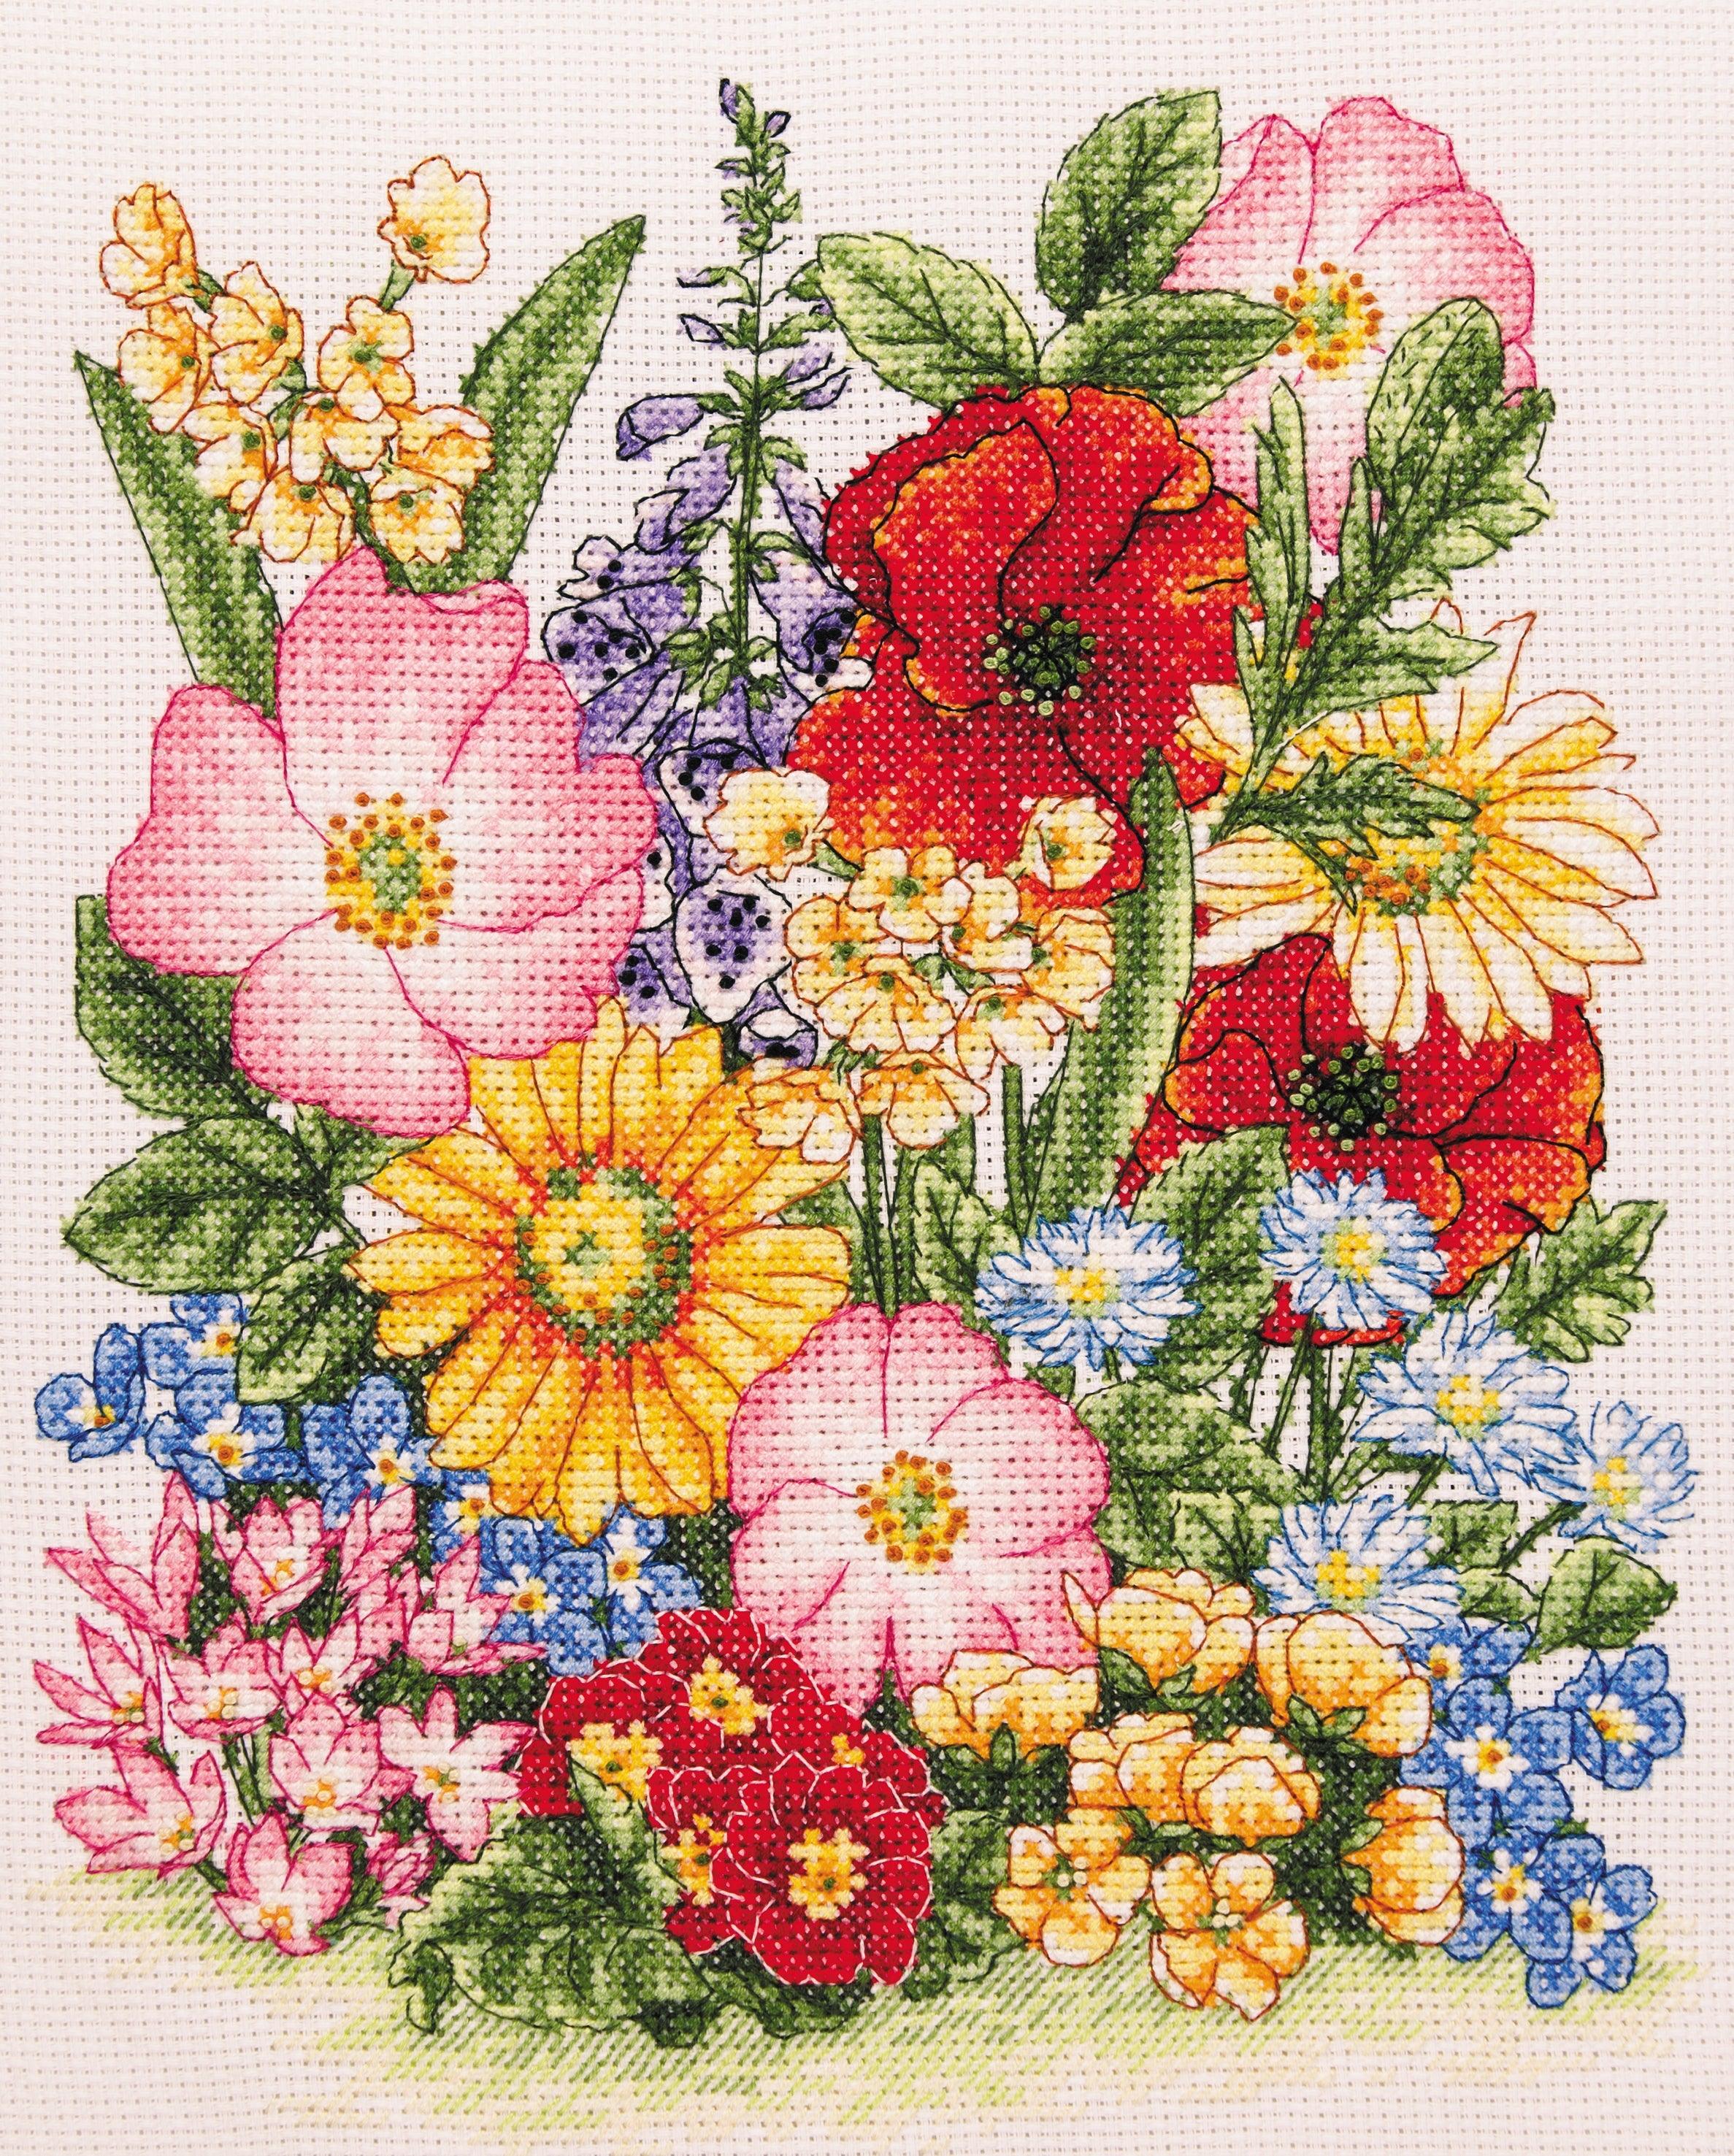 Anchor Cross Stitch Kit - Meadow Flowers - Luca-S Cross Stitch Kits